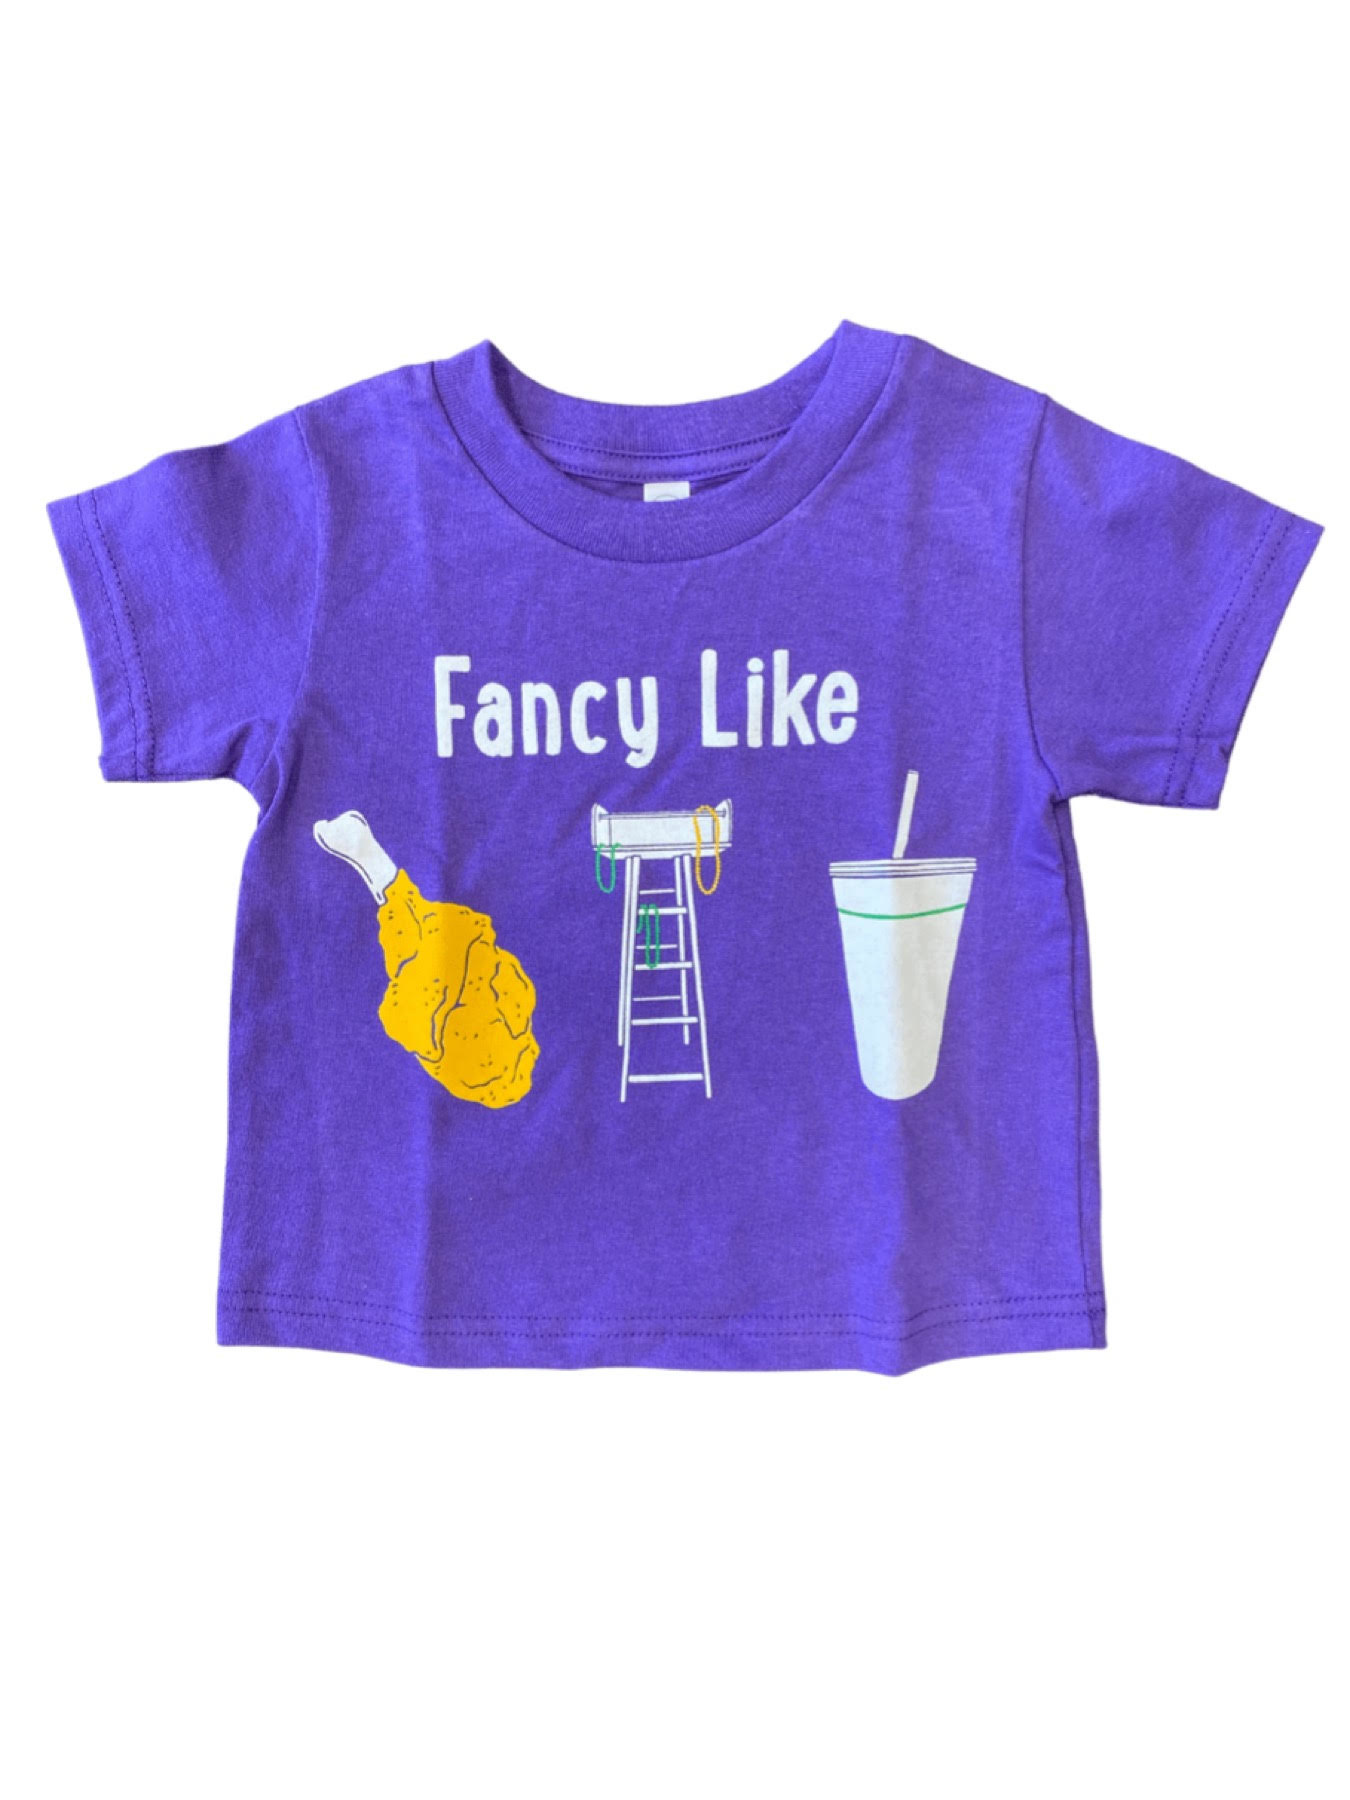 Inktastic Louisville, Kentucky Goldenrod Flower Gift Toddler Boy or Toddler  Girl T-Shirt 